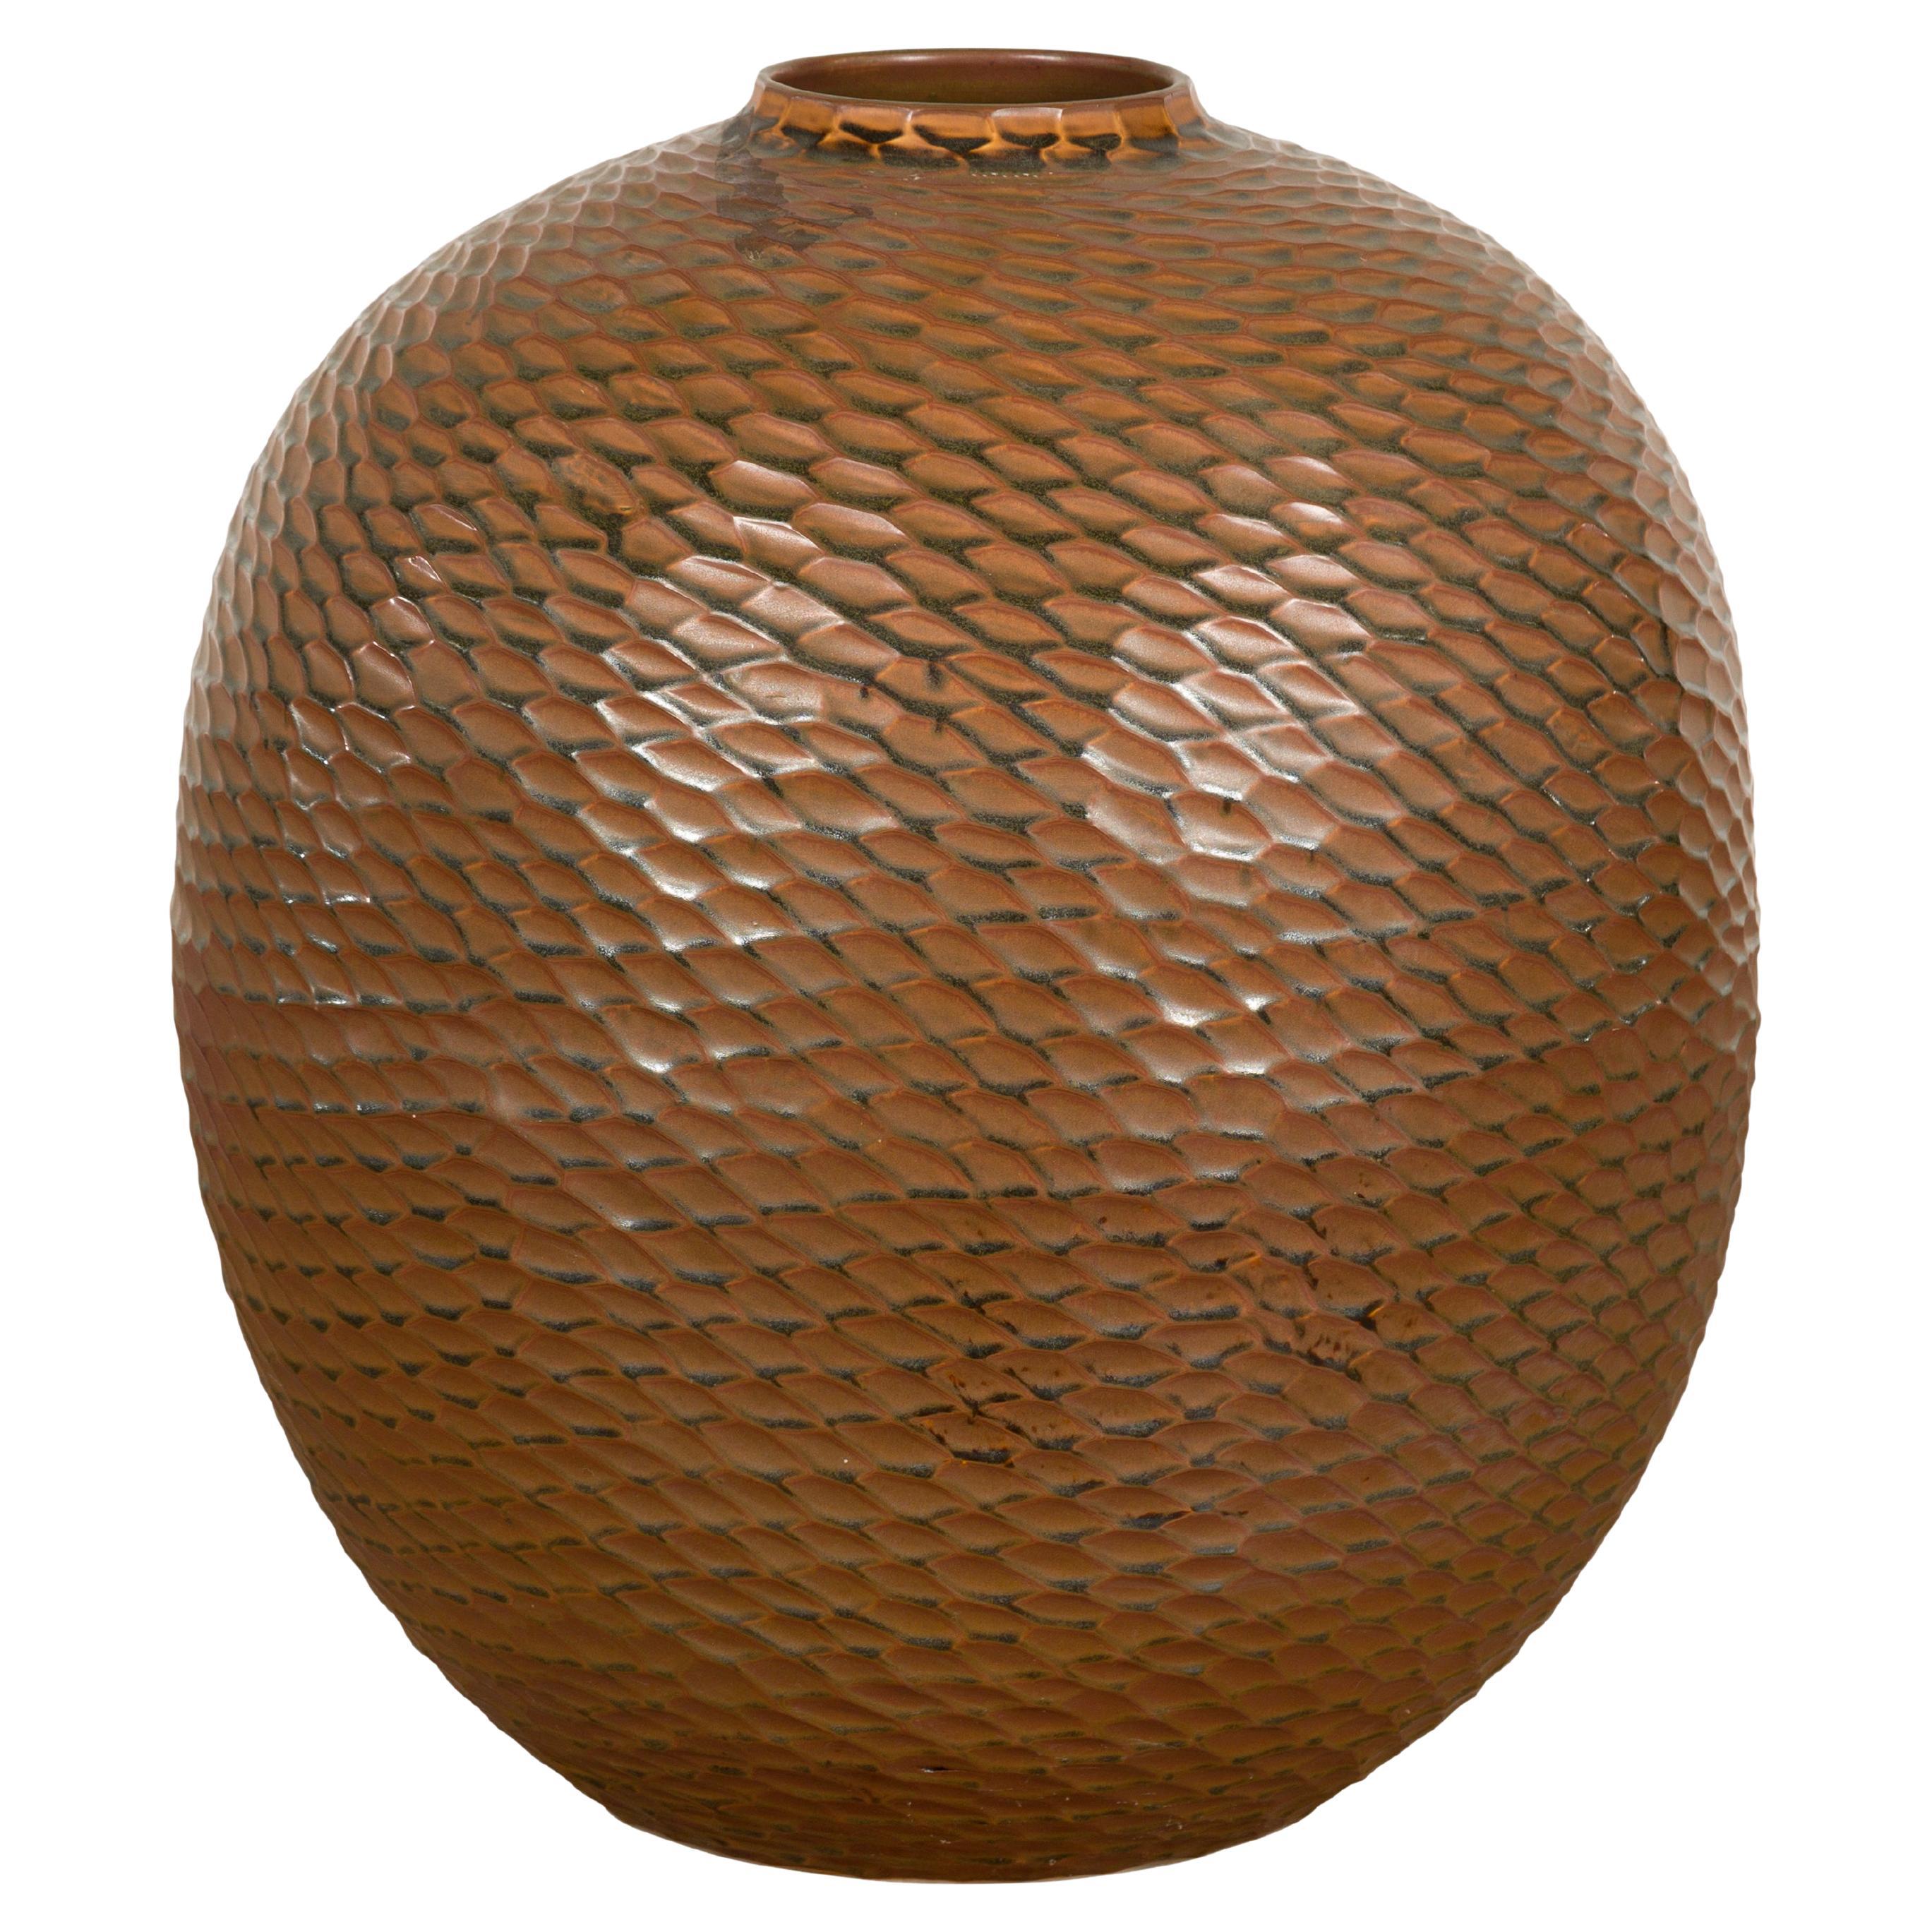 Handgefertigte braune Vase aus der Prem-Kollektion mit strukturierten Wabenmotiven